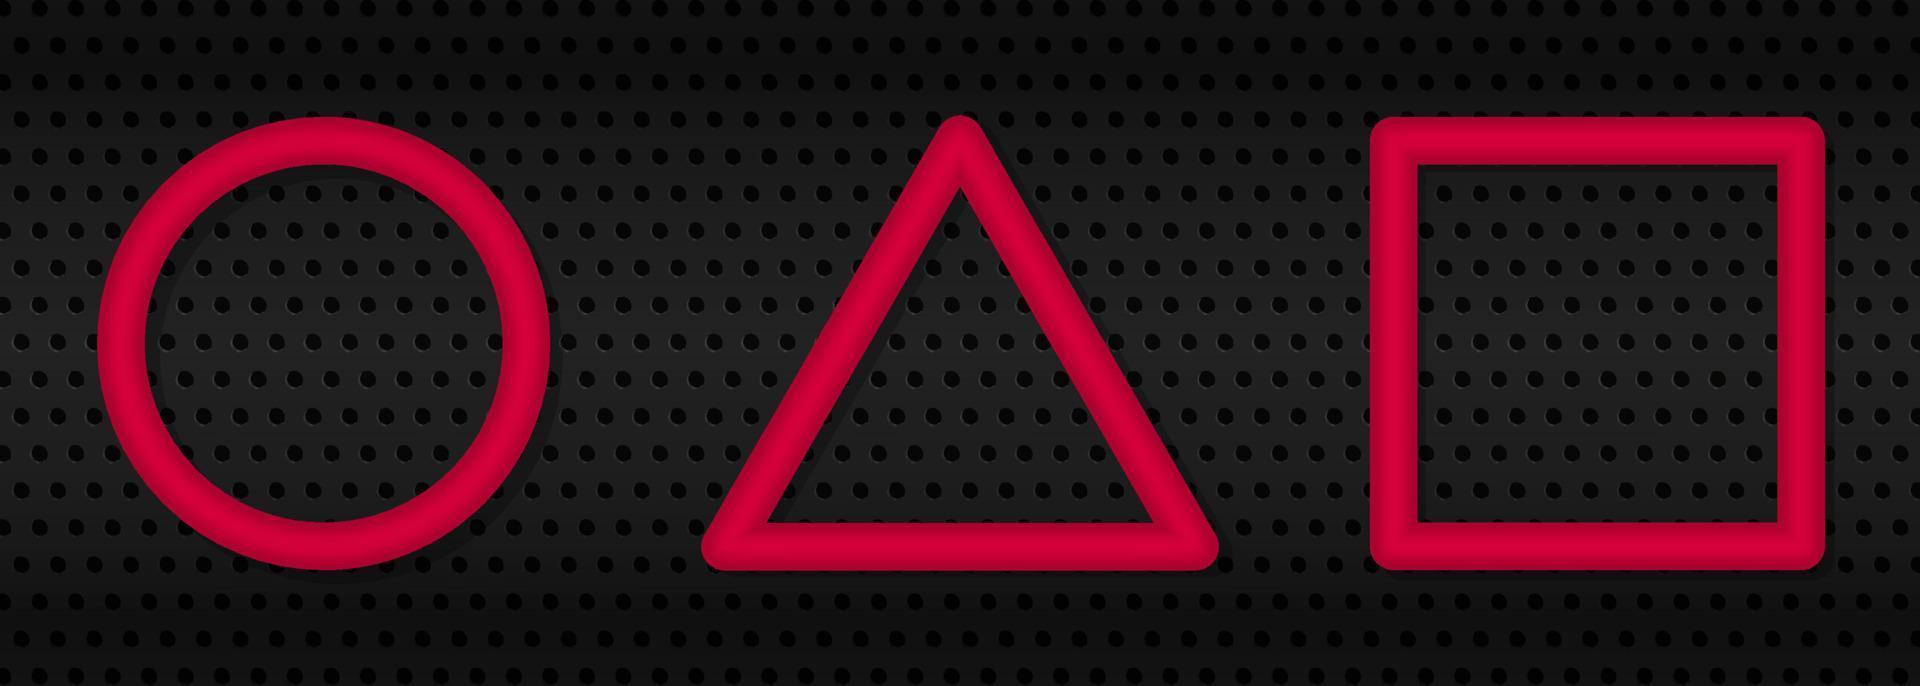 círculo rojo realista, triángulo, cuadrado sobre fondo de metal negro. signo de figuras geométricas. ilustración vectorial aislada. vector